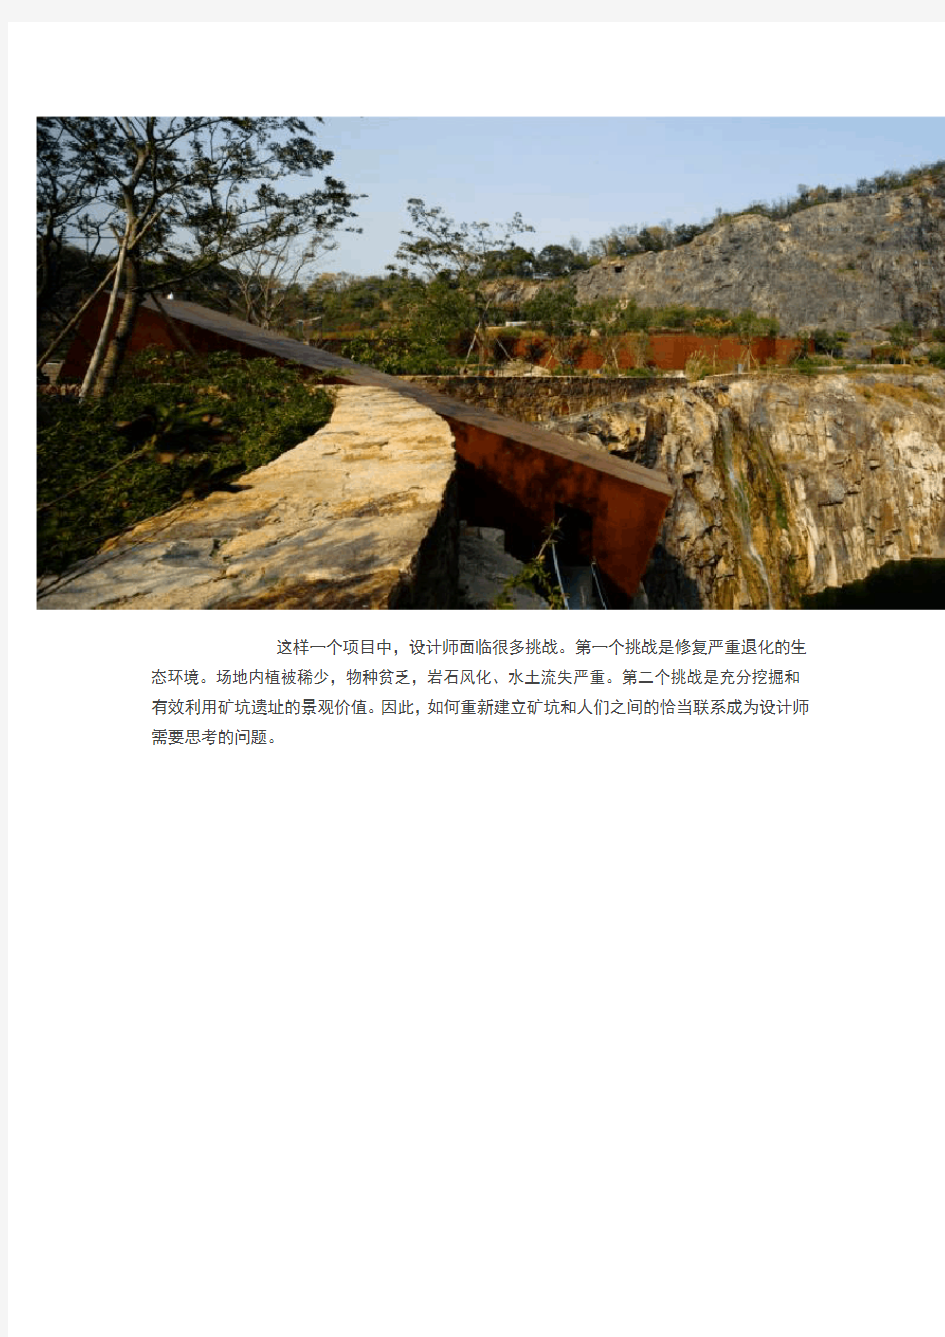 上海辰山植物园的矿坑花园(经典的生态修复案例)